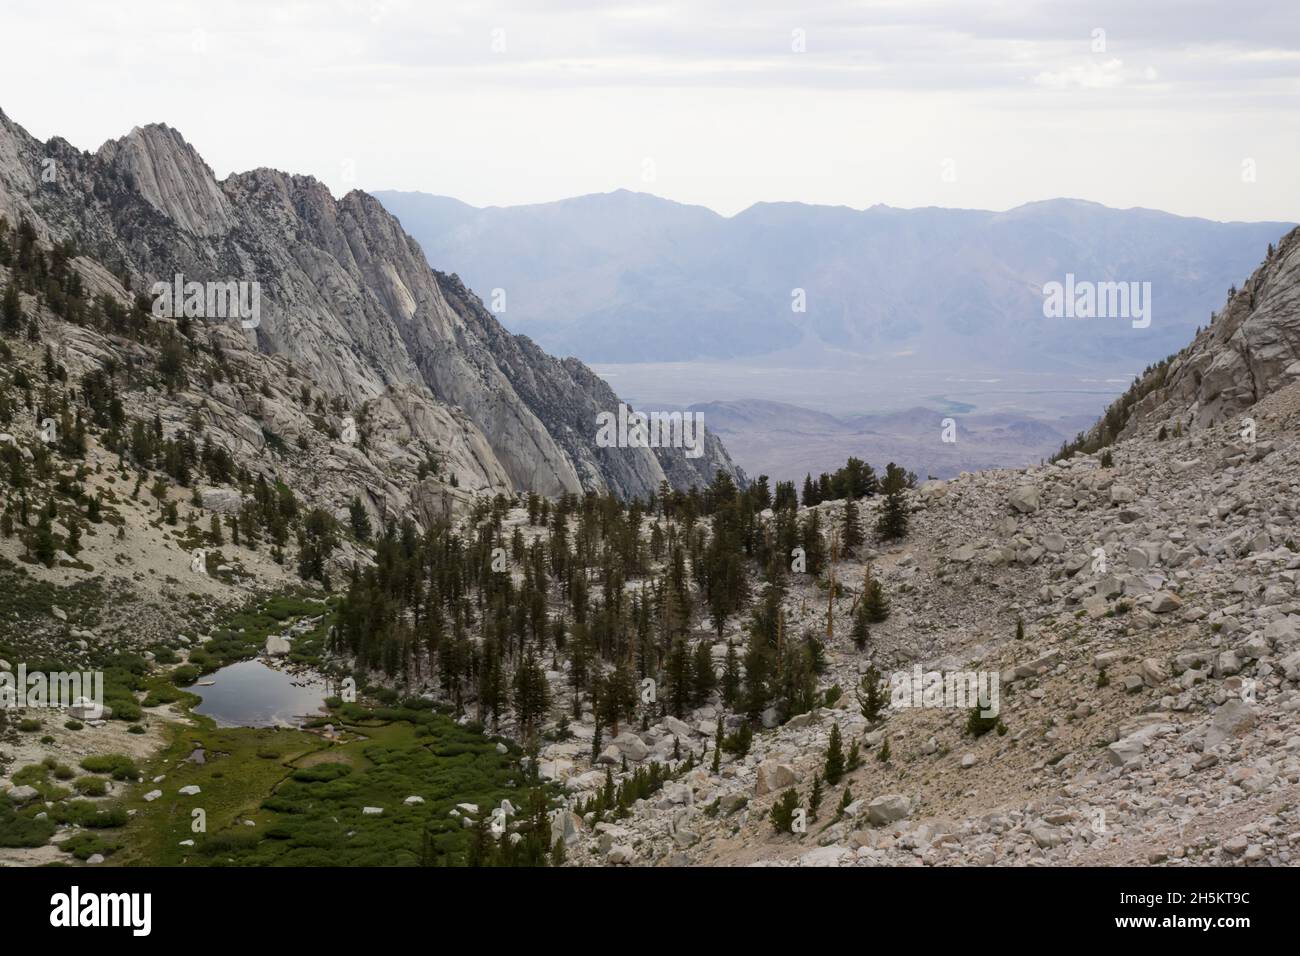 The Sierra Nevada mountains near Mount Whitney. Stock Photo